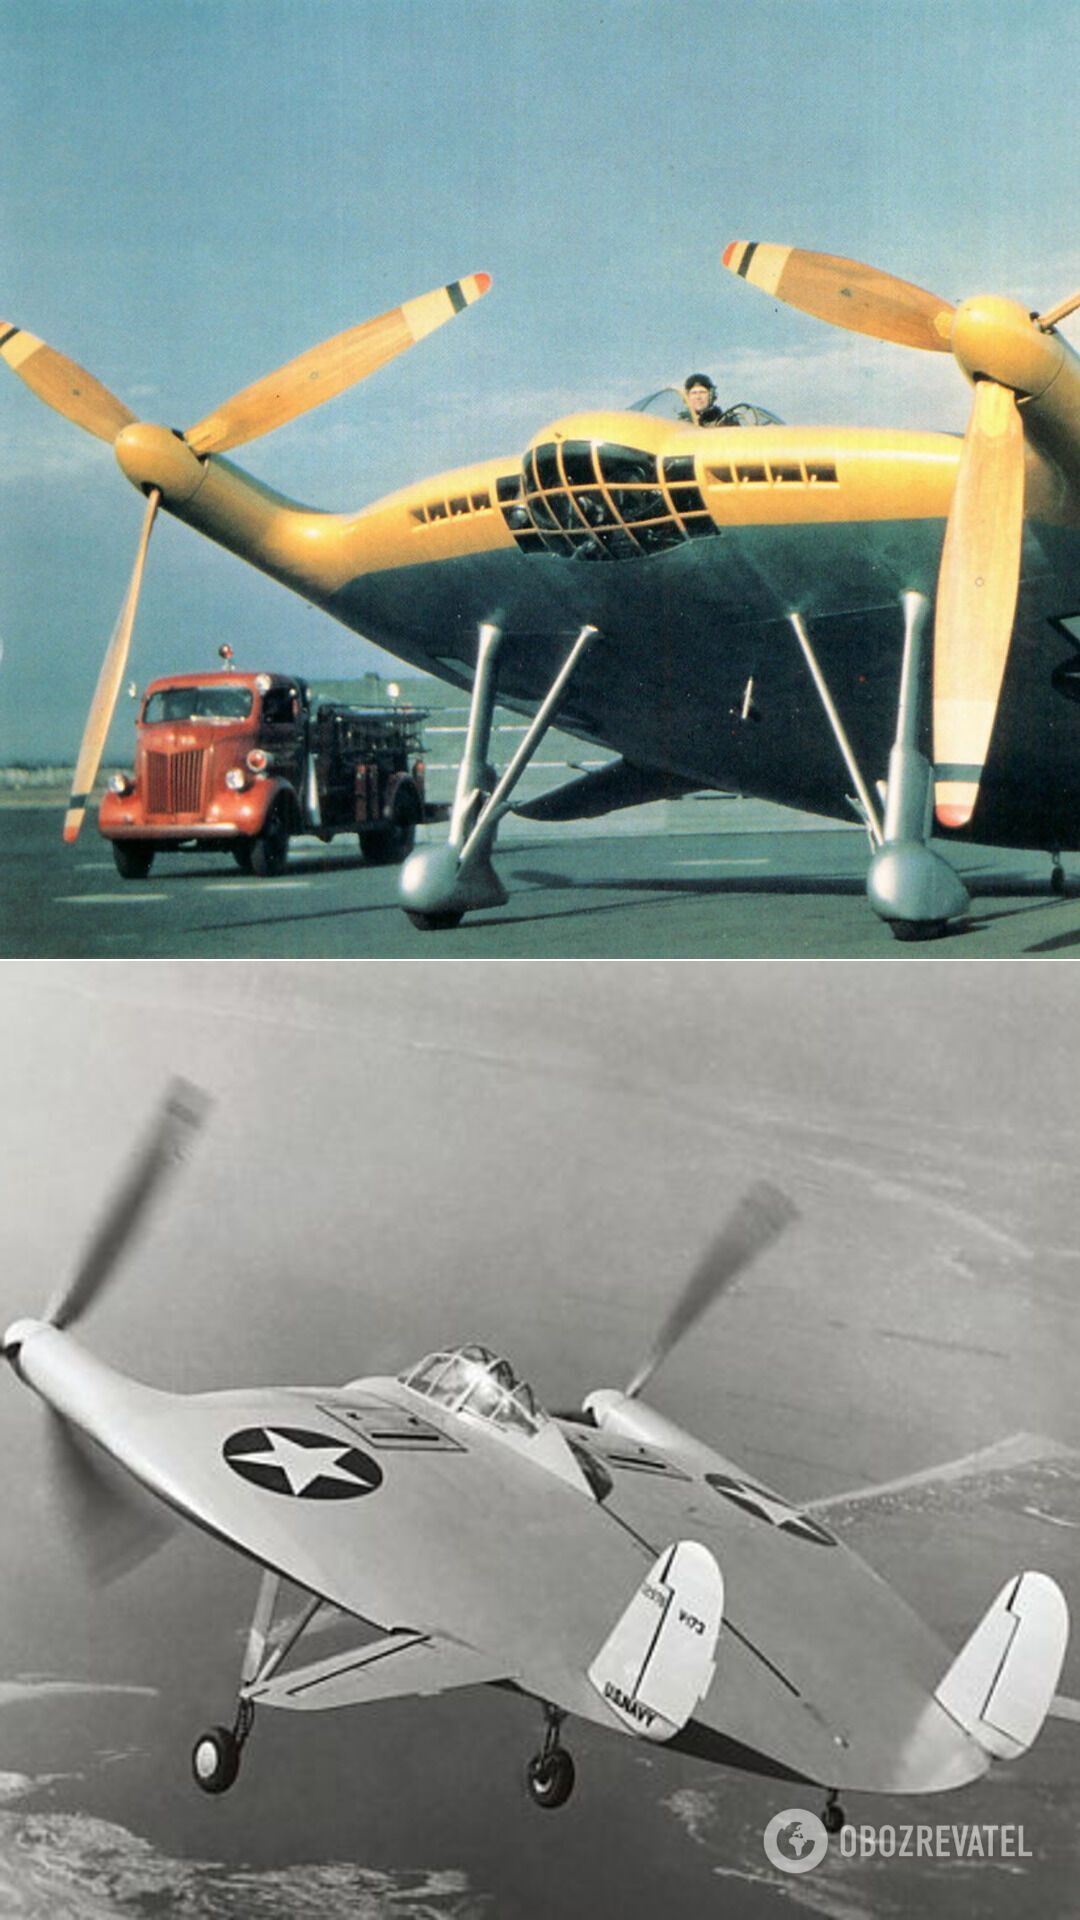 Експериментальний літак Vought V-173 – "літальний млинець" – один із перших апаратів вертикального/укороченого зльоту і посадки. У 1940-х роках американський інженер Чарльз Циммерман створив цей літак унікальної аеродинамічної схеми, який досі продовжує дивувати не тільки своїм незвичайним виглядом, але й льотними характеристиками